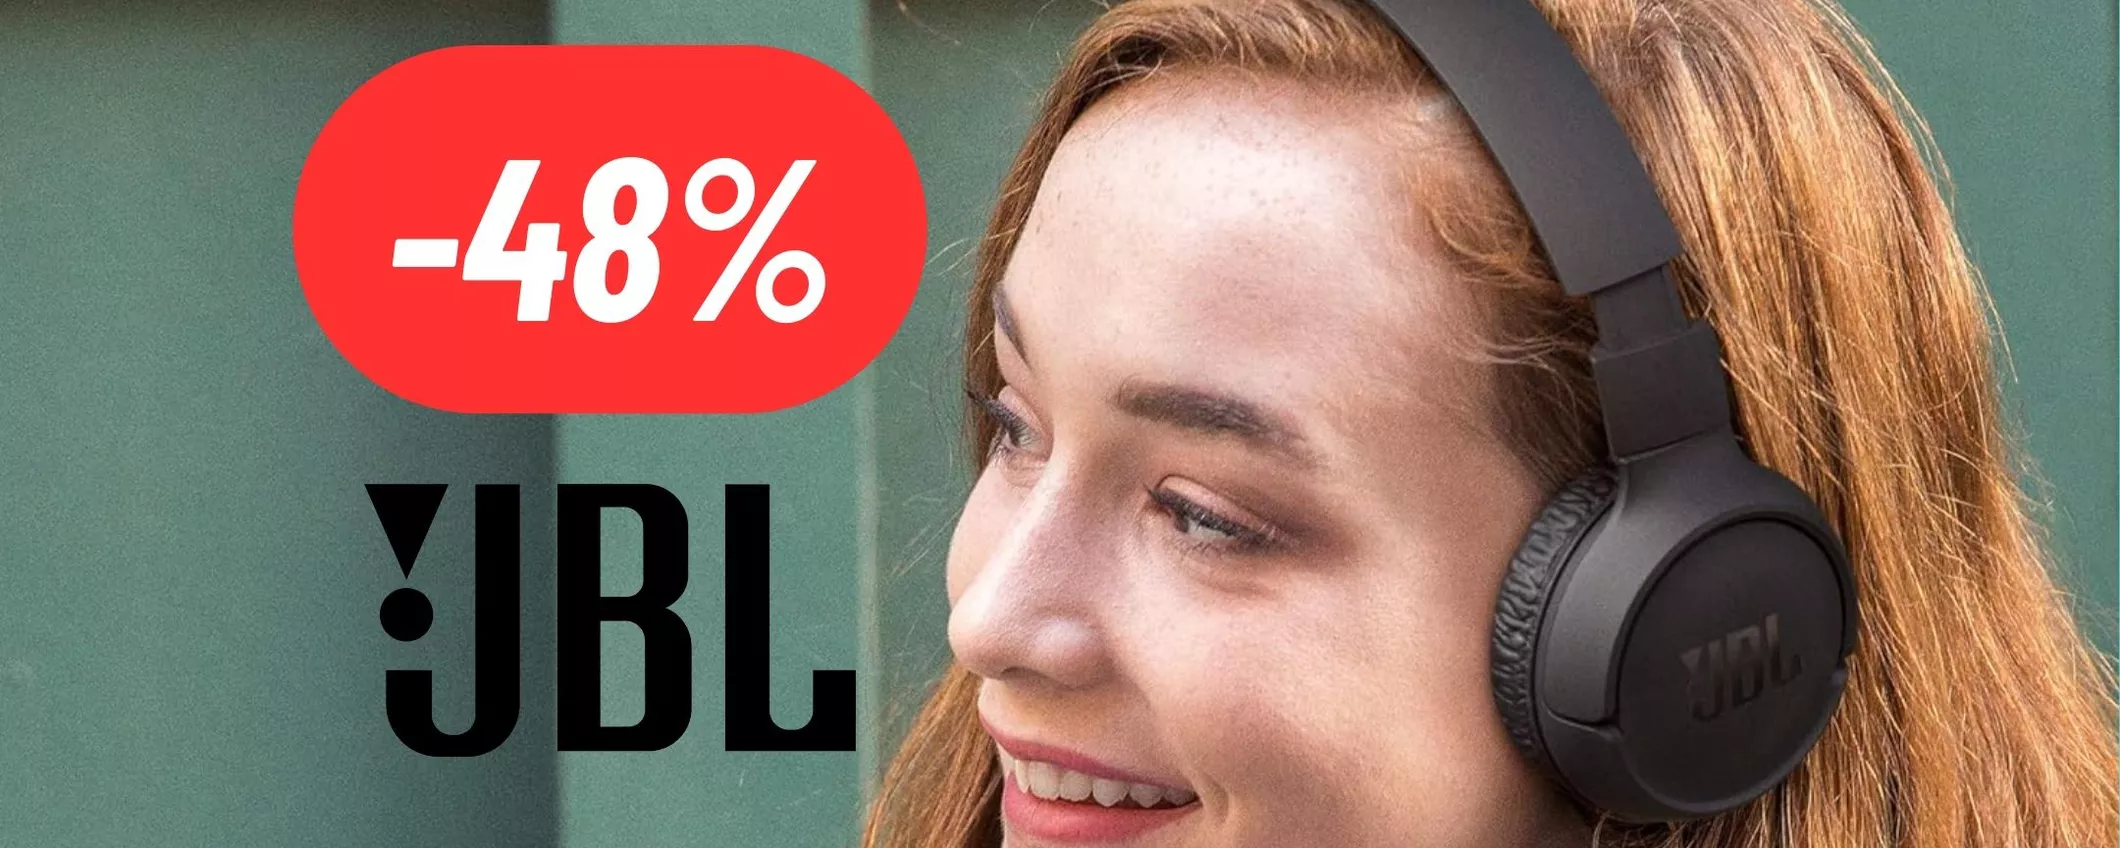 Cuffie JBL di qualità PREMIUM al 48% di sconto su Amazon